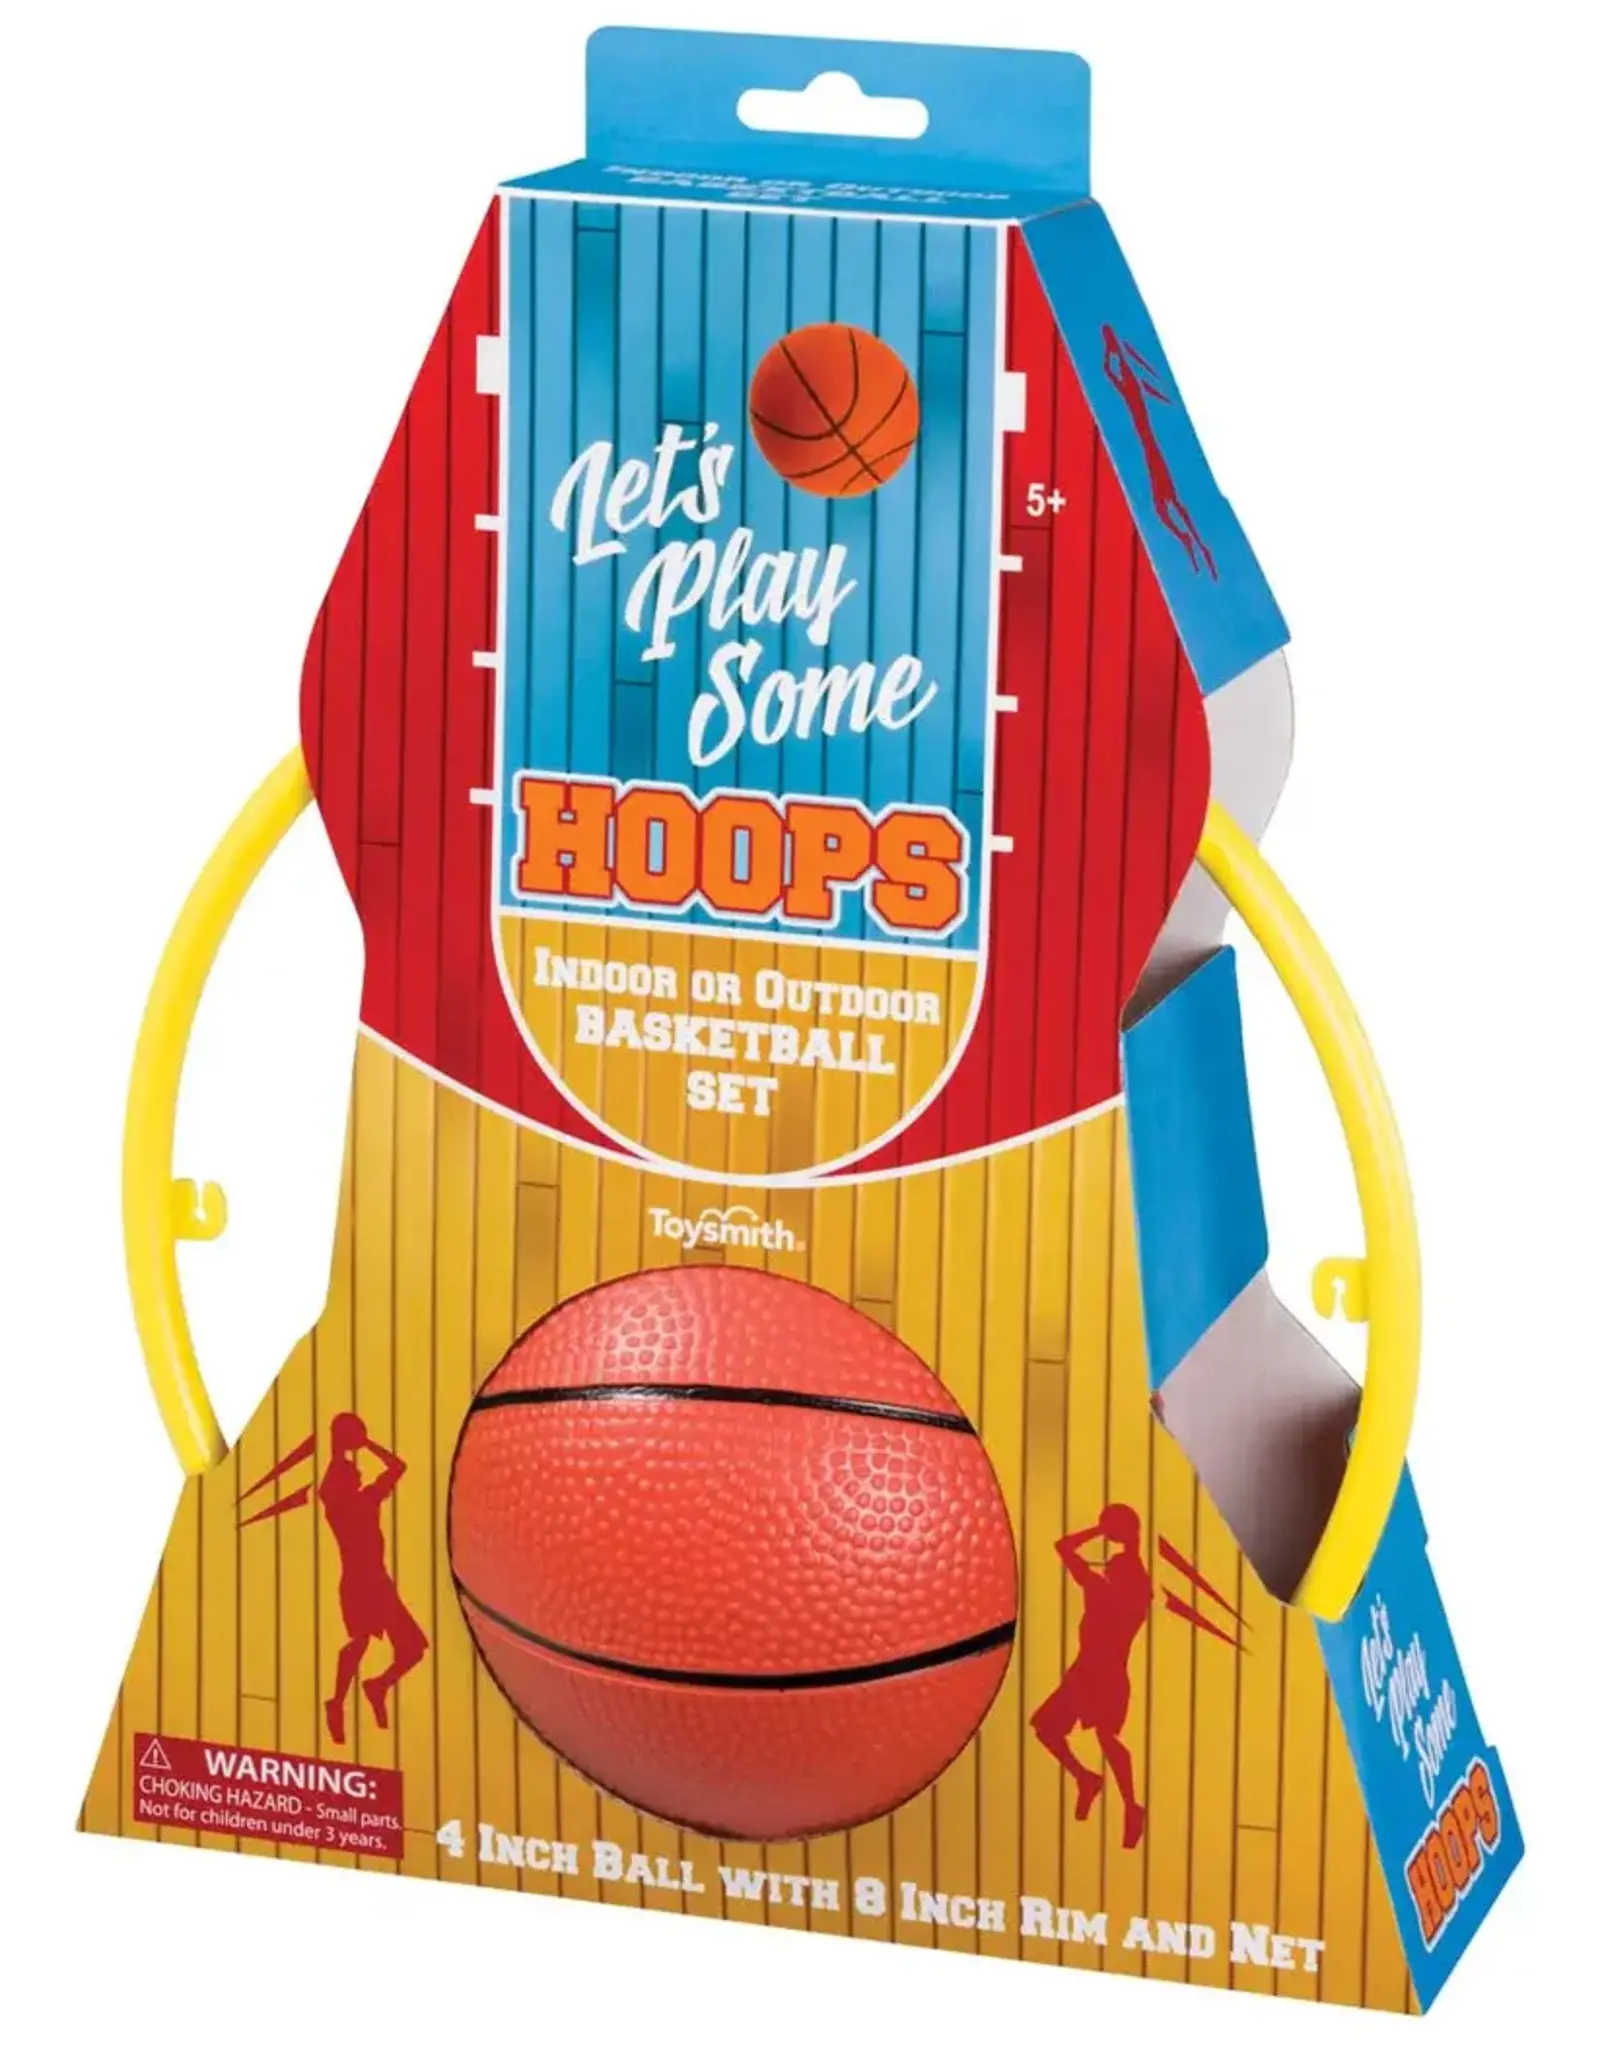 Kids Indoor Basketball Hoop Set with 4 Balls